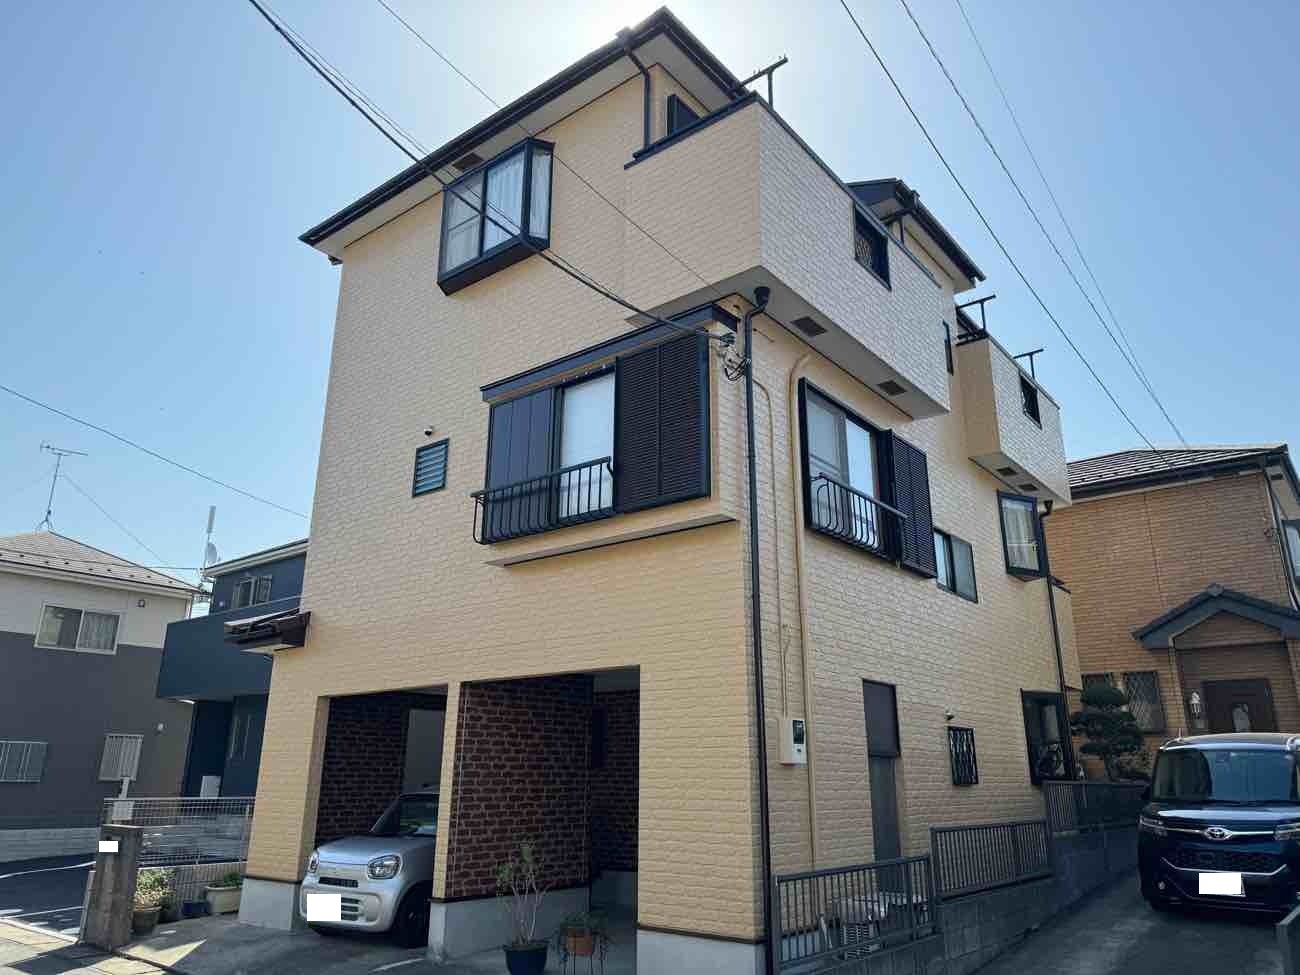 【埼玉県吉川市】U様邸外壁屋根塗装工事が完了しました。SK化研 プレミアムシリコン 画像